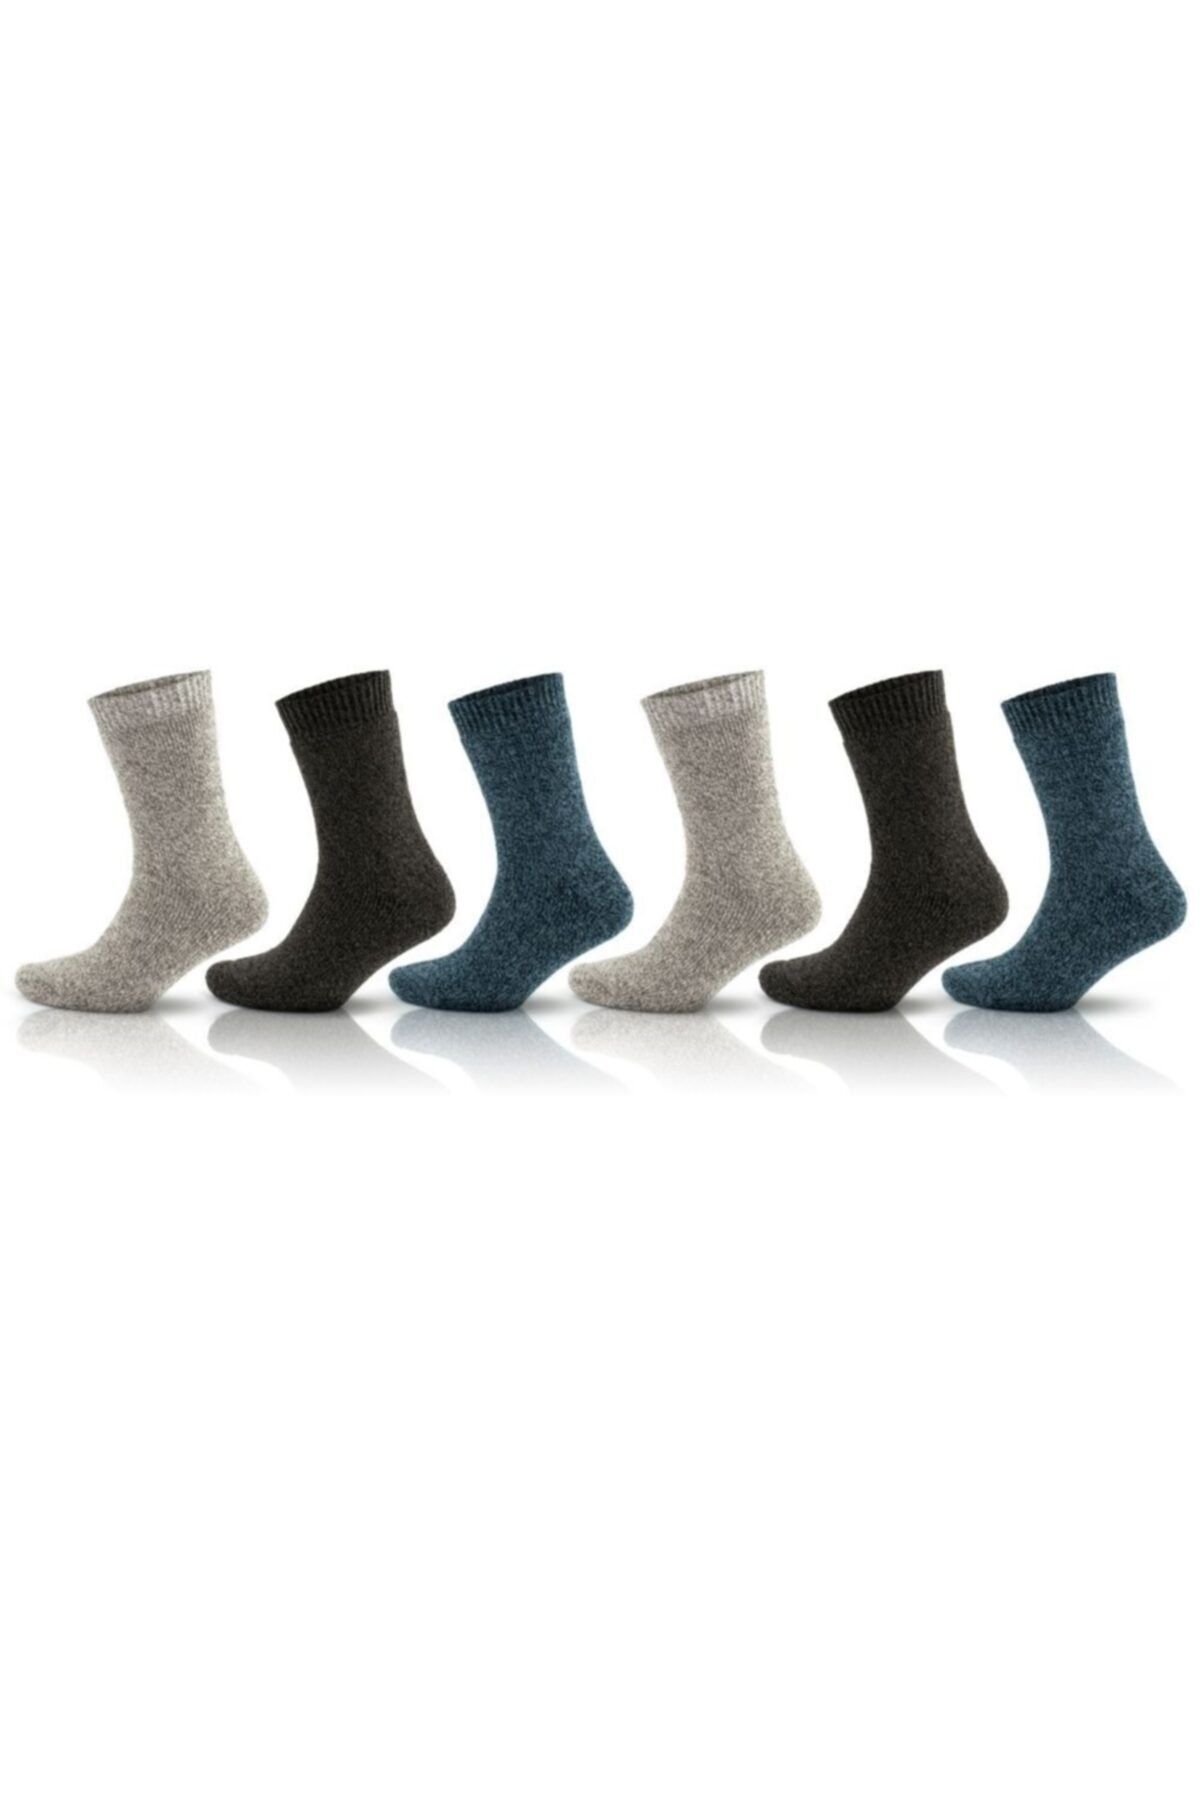 Go With Norveç Tipi Havlulu Yünlü Kışlık Soft Termal Çorap 6 Çift 2038